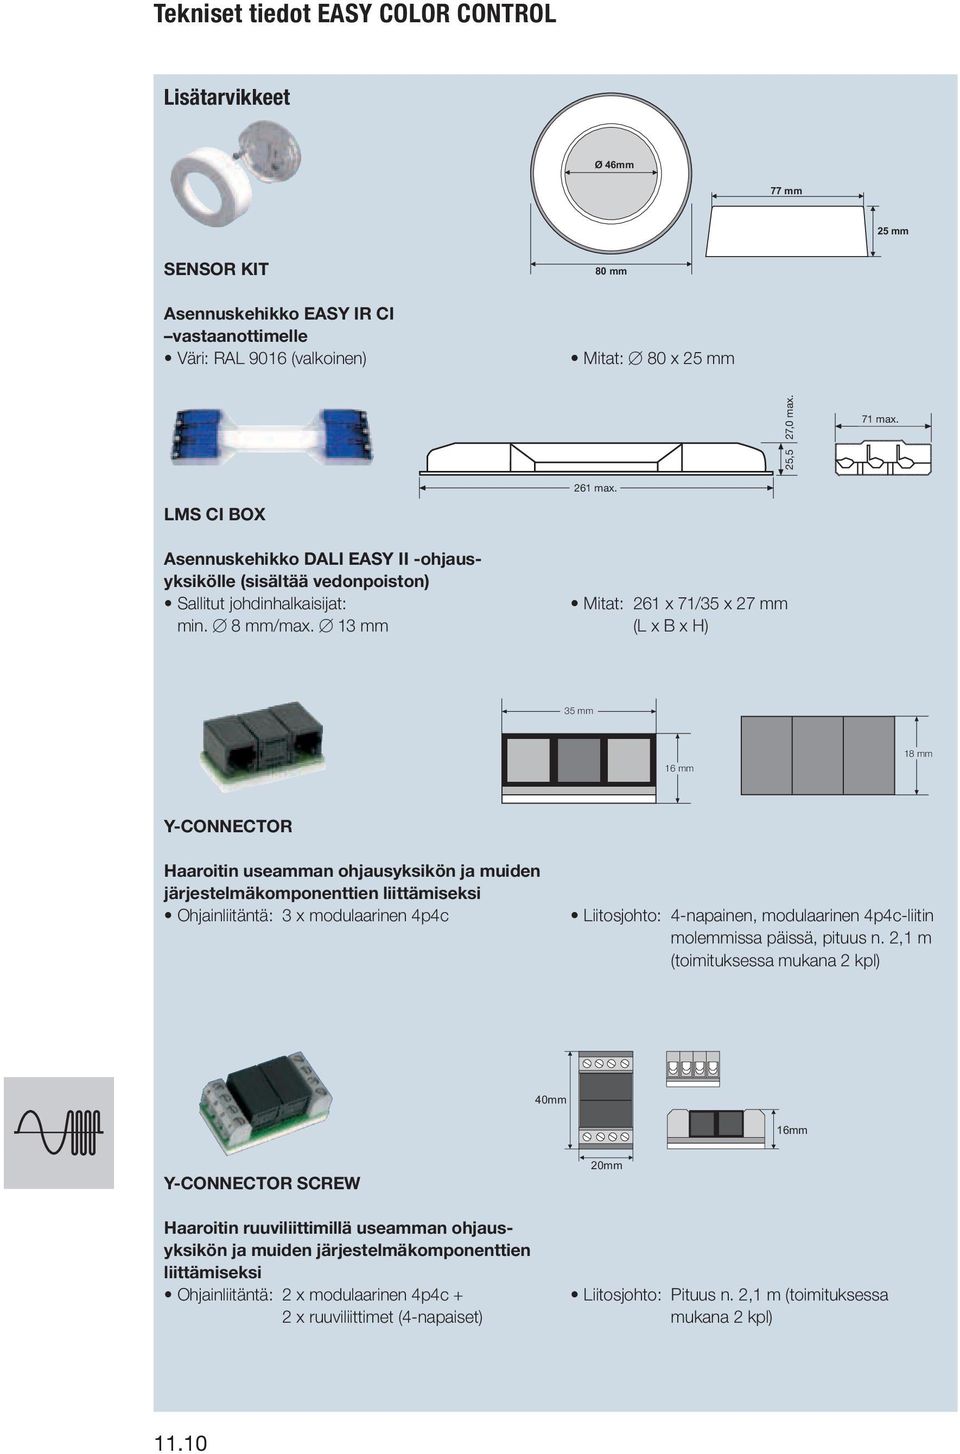 Mitat: 261 x 71/35 x 27 mm (L x B x H) 16 mm 18 mm Y-CONNECTOR Haaroitin useamman ohjausyksikön ja muiden järjestelmäkomponenttien liittämiseksi Ohjainliitäntä: 3 x modulaarinen 4p4c Liitosjohto: